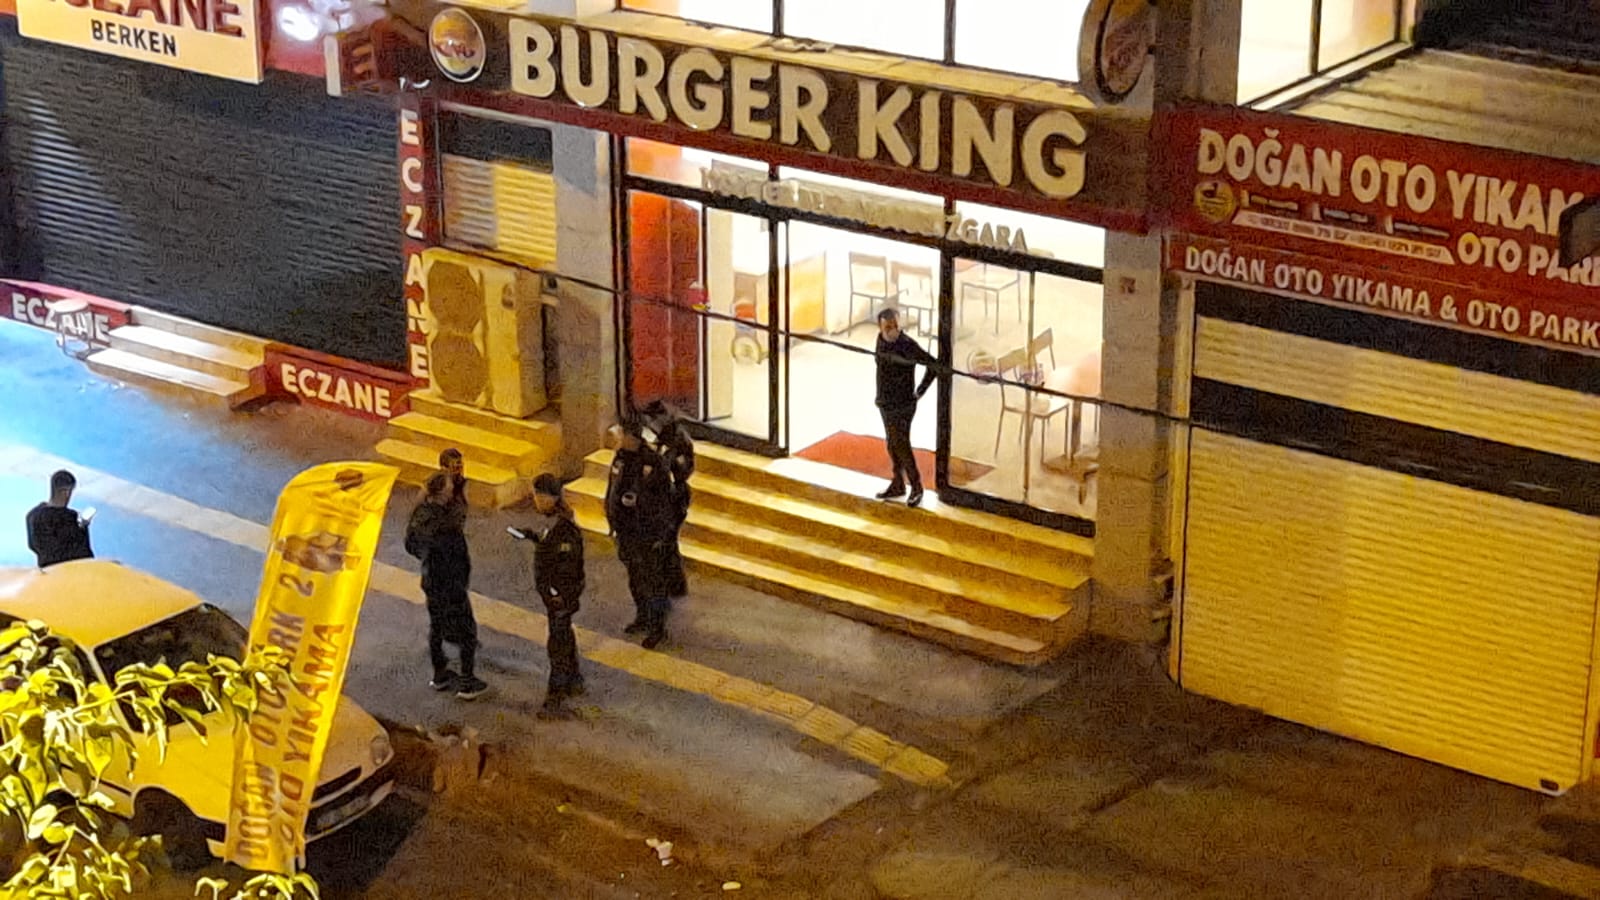 VİDEO- Diyarbakır'da Burger King şubesine ses bombalı saldırı